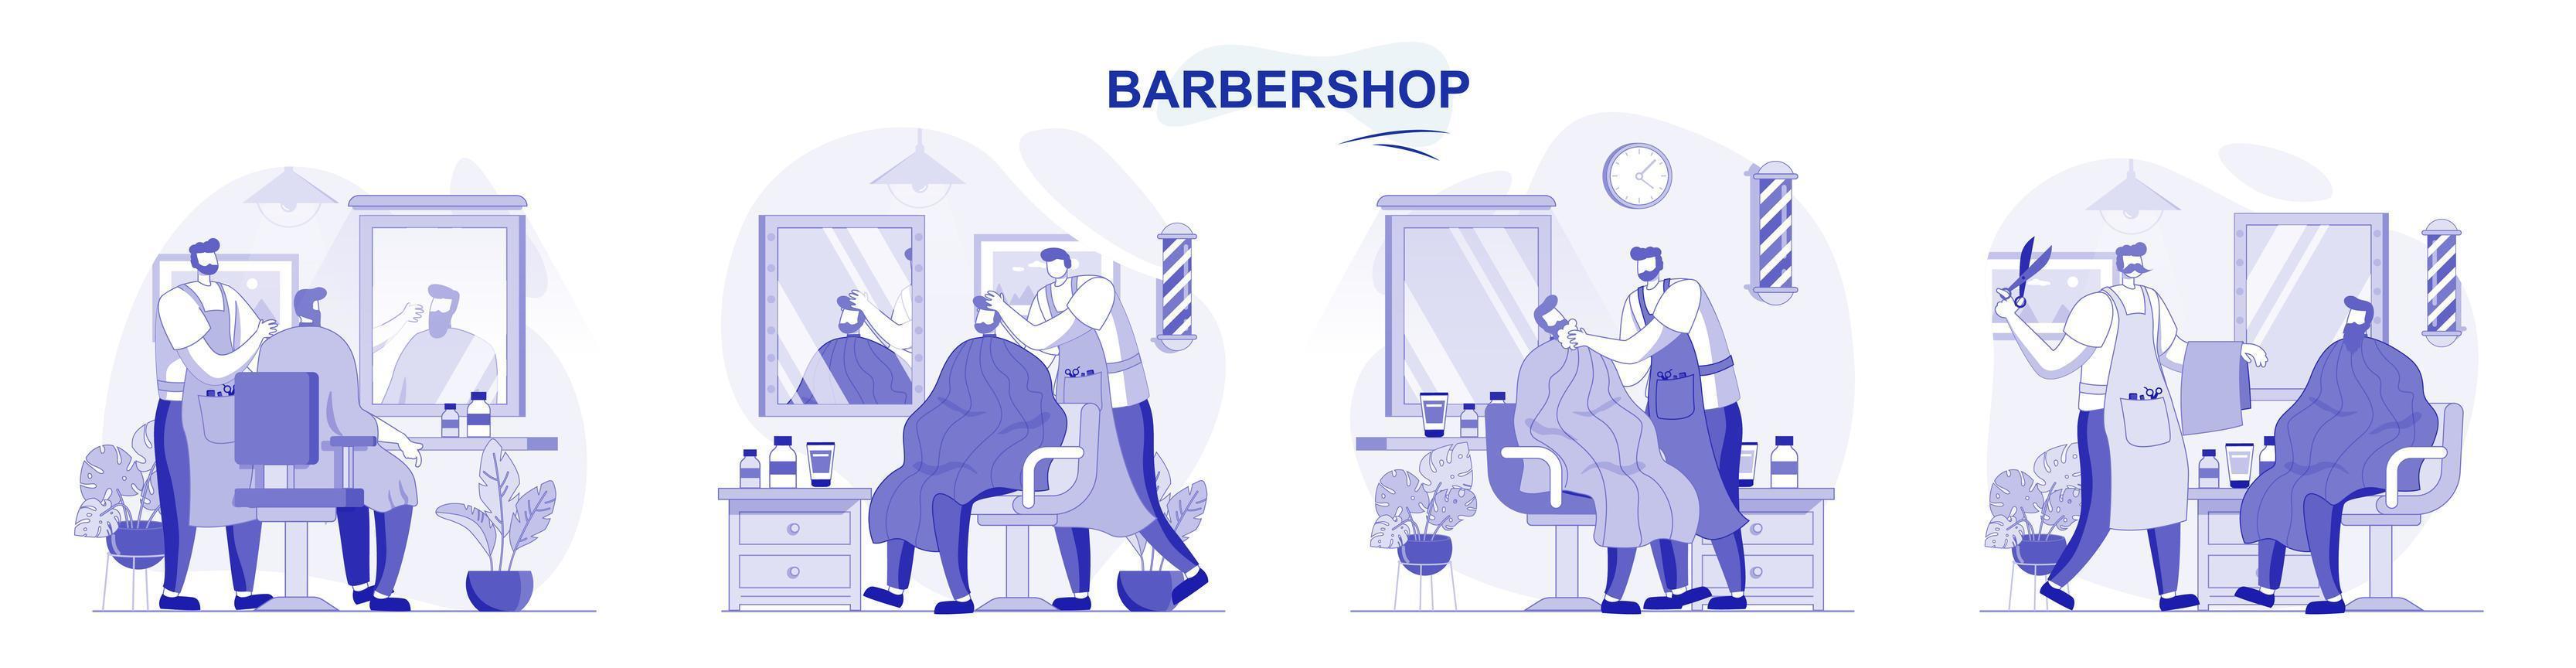 barbería aislado en diseño plano. la gente se corta el pelo o se afeita la barba, el peluquero hace una colección de escenas de peinado. ilustración vectorial para blogs, sitios web, aplicaciones móviles, materiales promocionales. vector